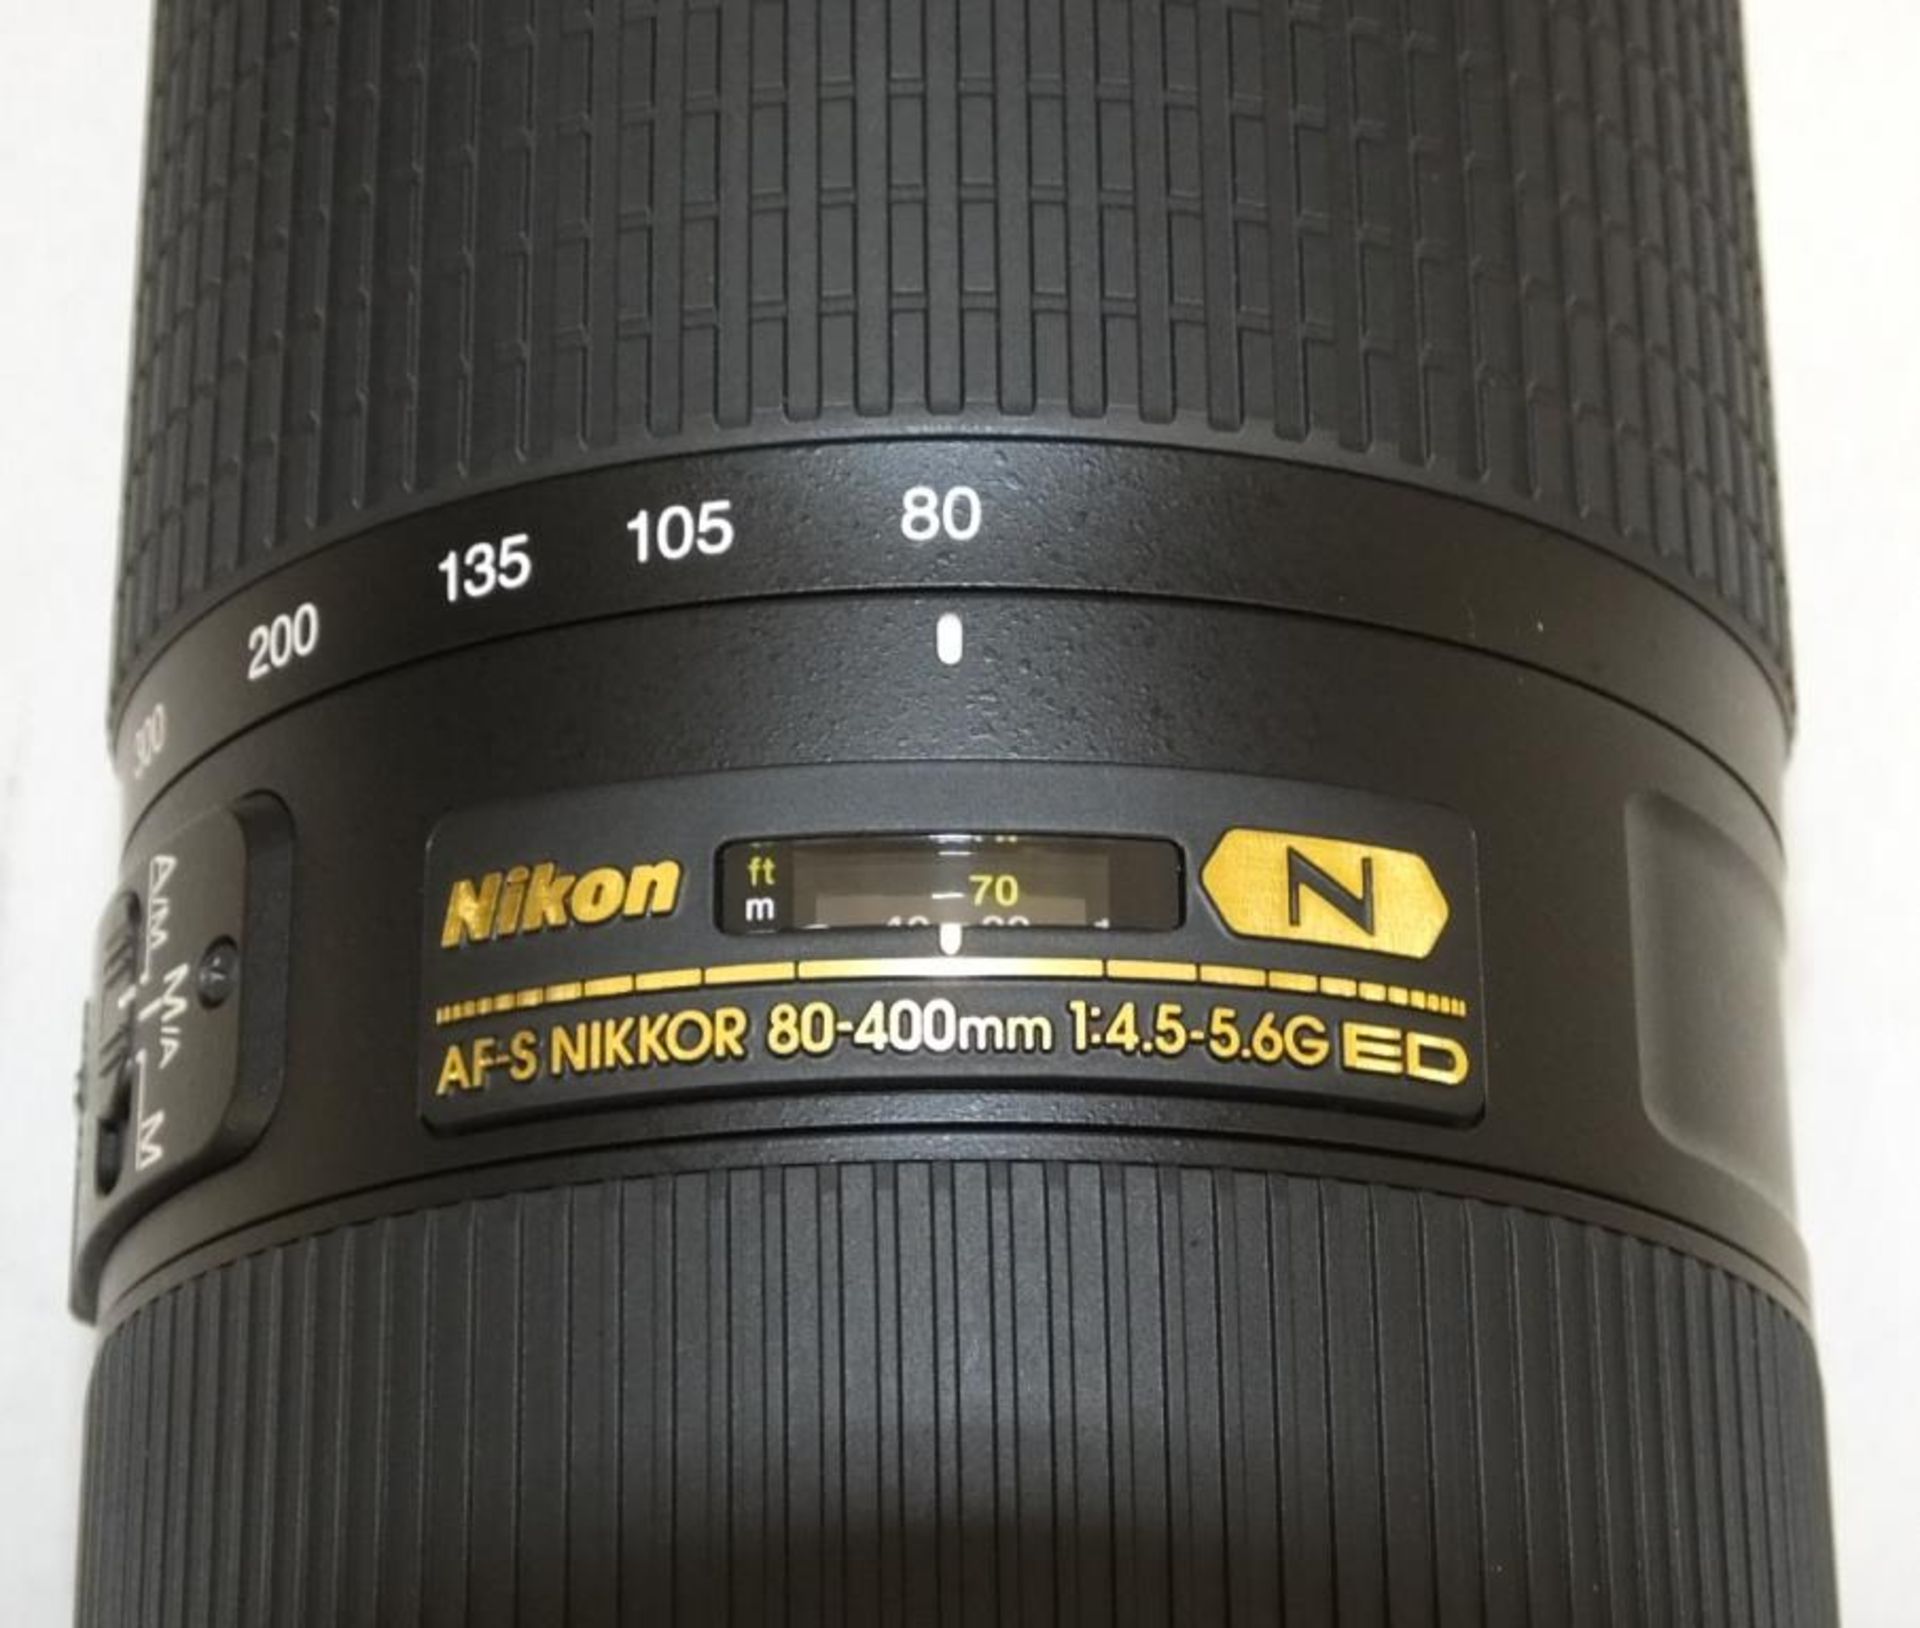 Nikon Nikkor Lens - AF-S Nikkor 80-400mm f/4.5-5.6G ED VR with Nikon HB-65 Lens Hood & CL-M2 case - Image 2 of 6